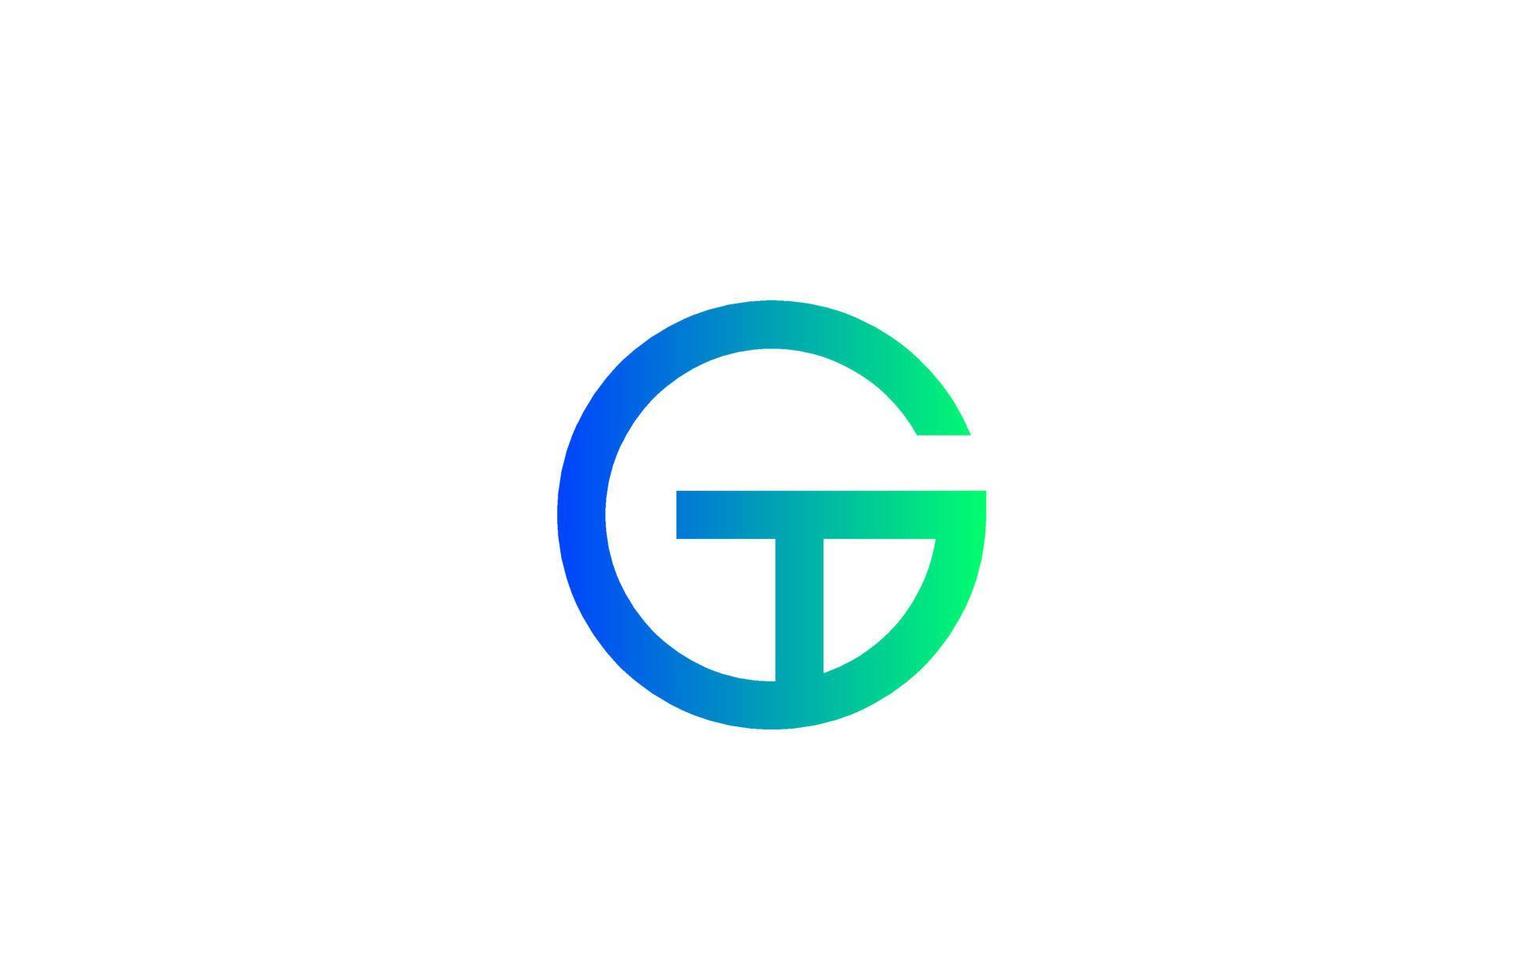 groen blauw g alfabet letterpictogram logo. lijnontwerp voor bedrijfs- en bedrijfsidentiteit vector